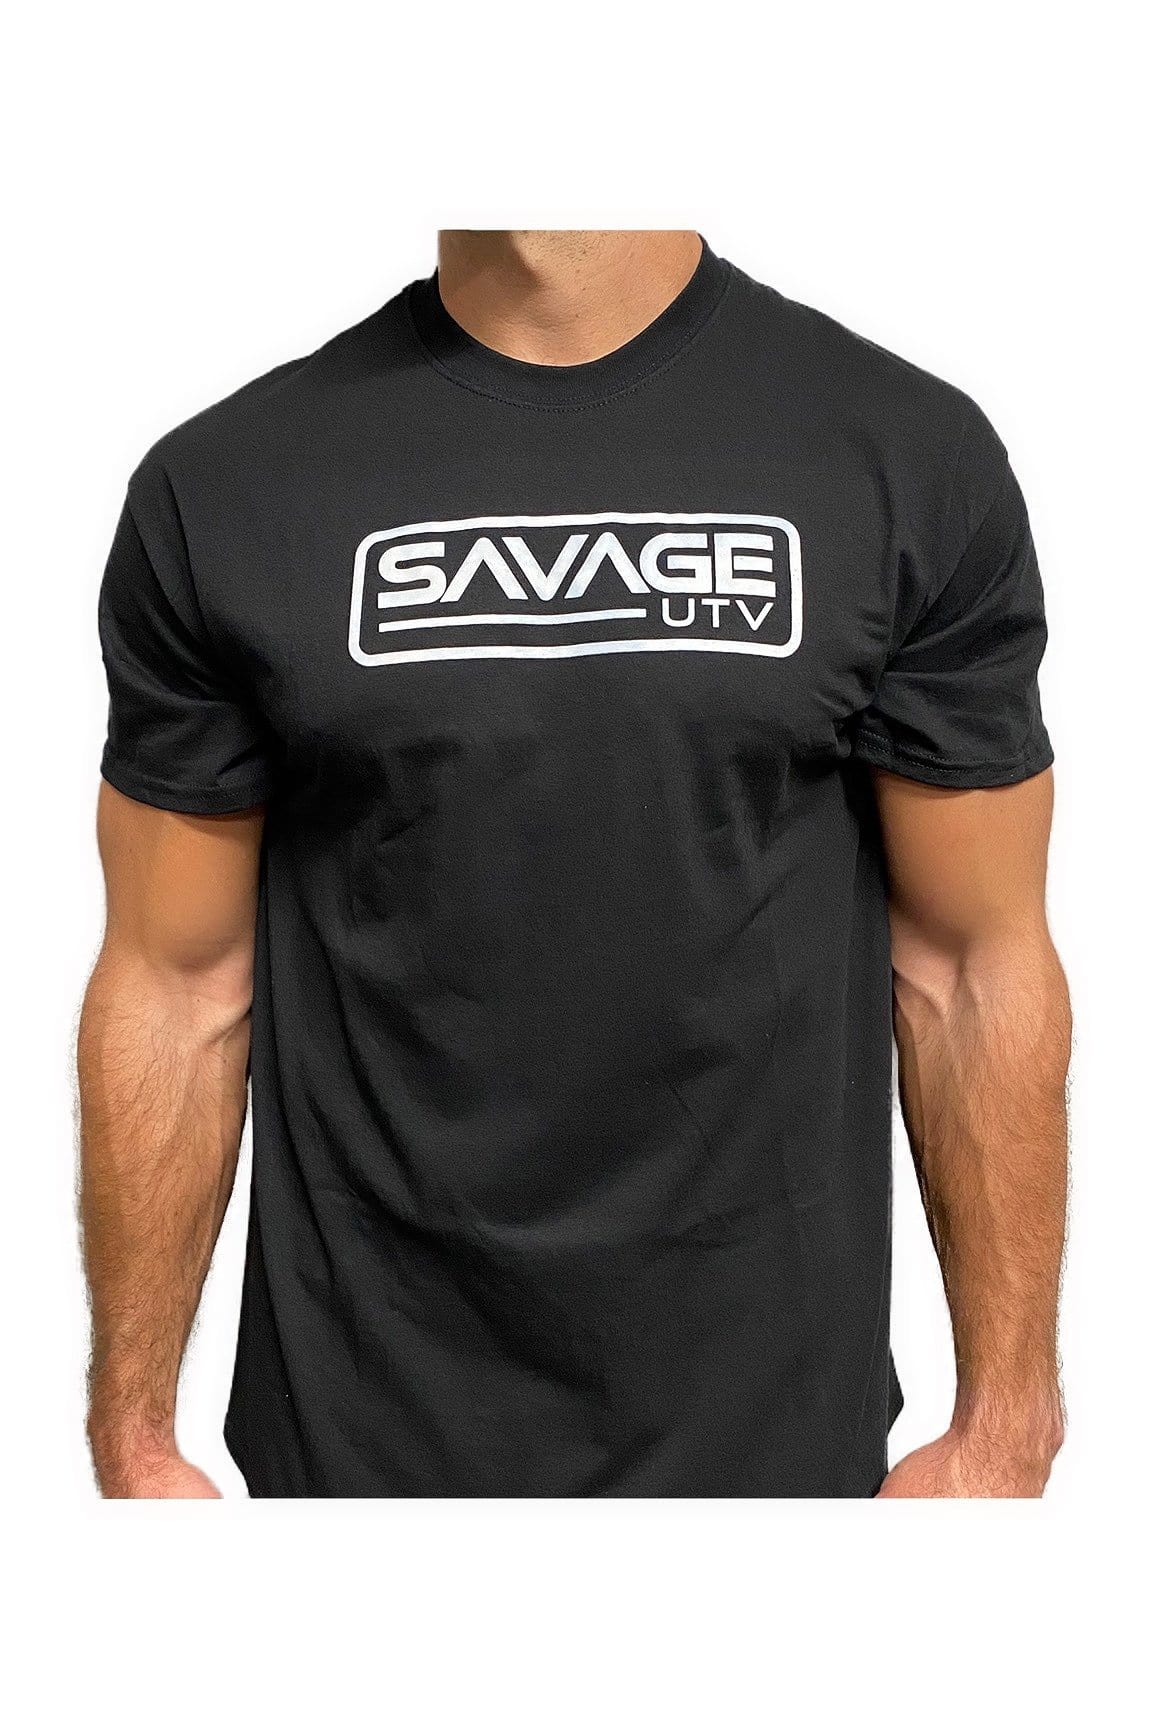 Savage UTV T-Shirt